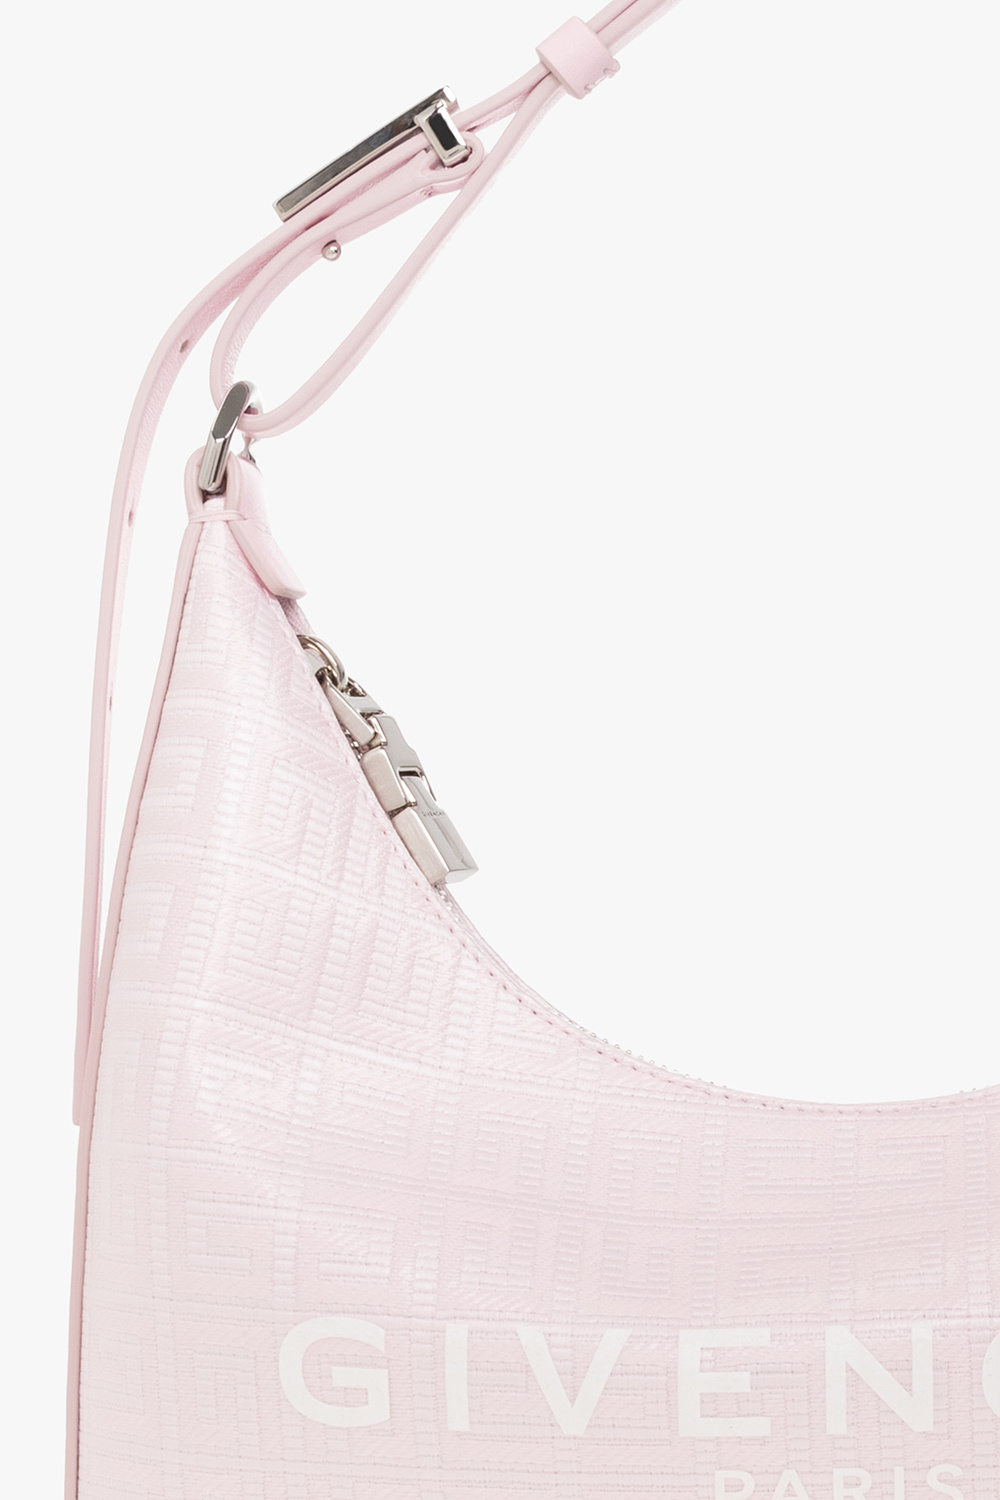 StclaircomoShops | Givenchy midi 'Moon Cut Out Small' shoulder bag 